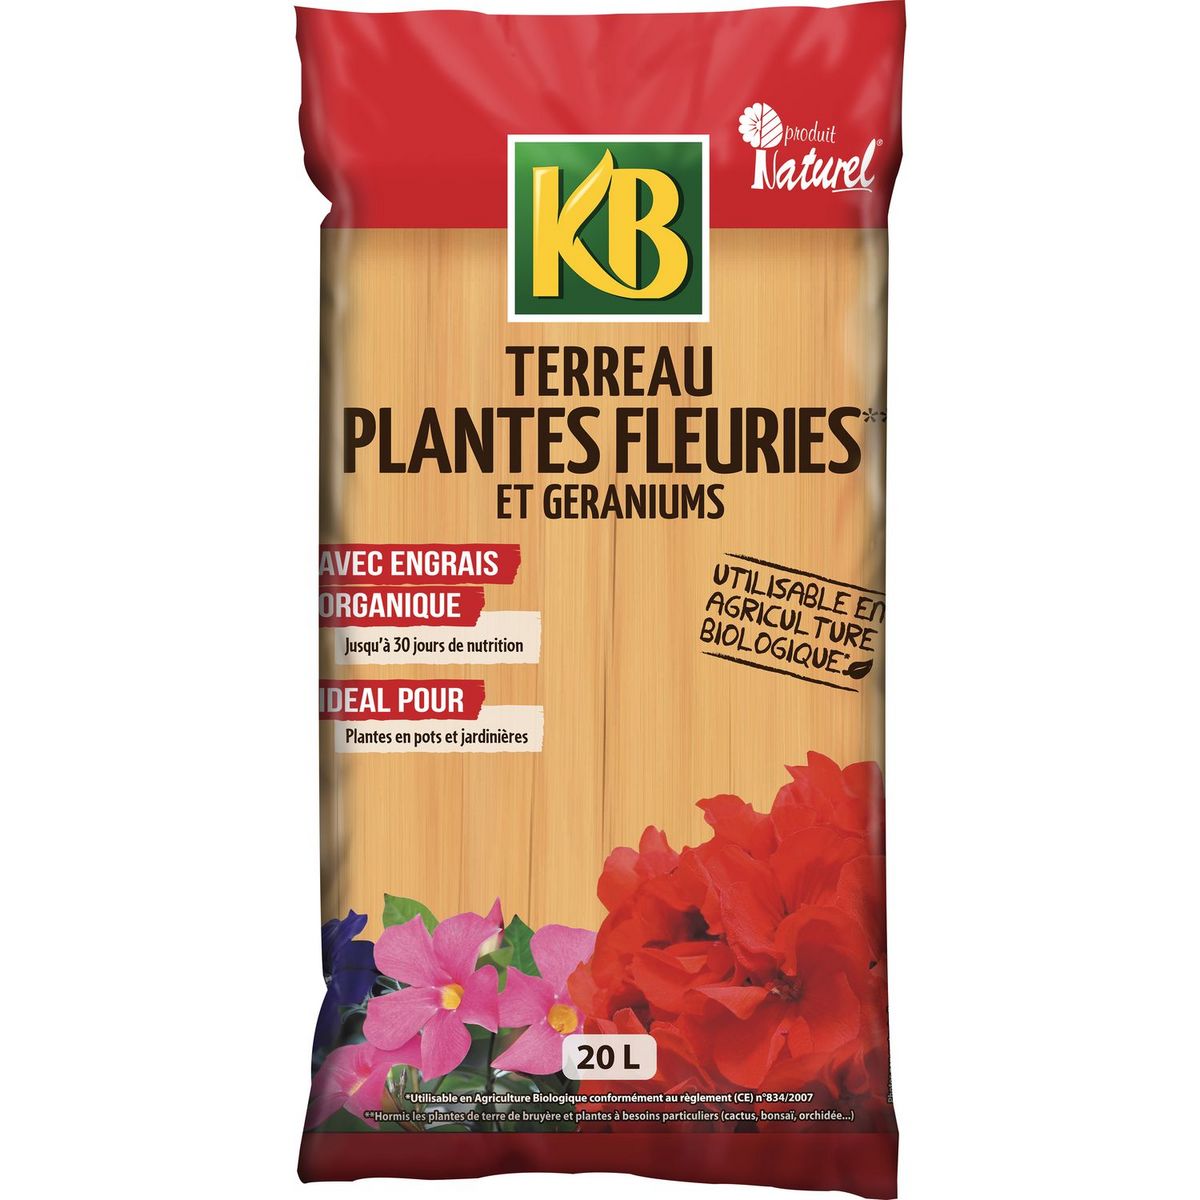 KB Terreau plantes fleuries